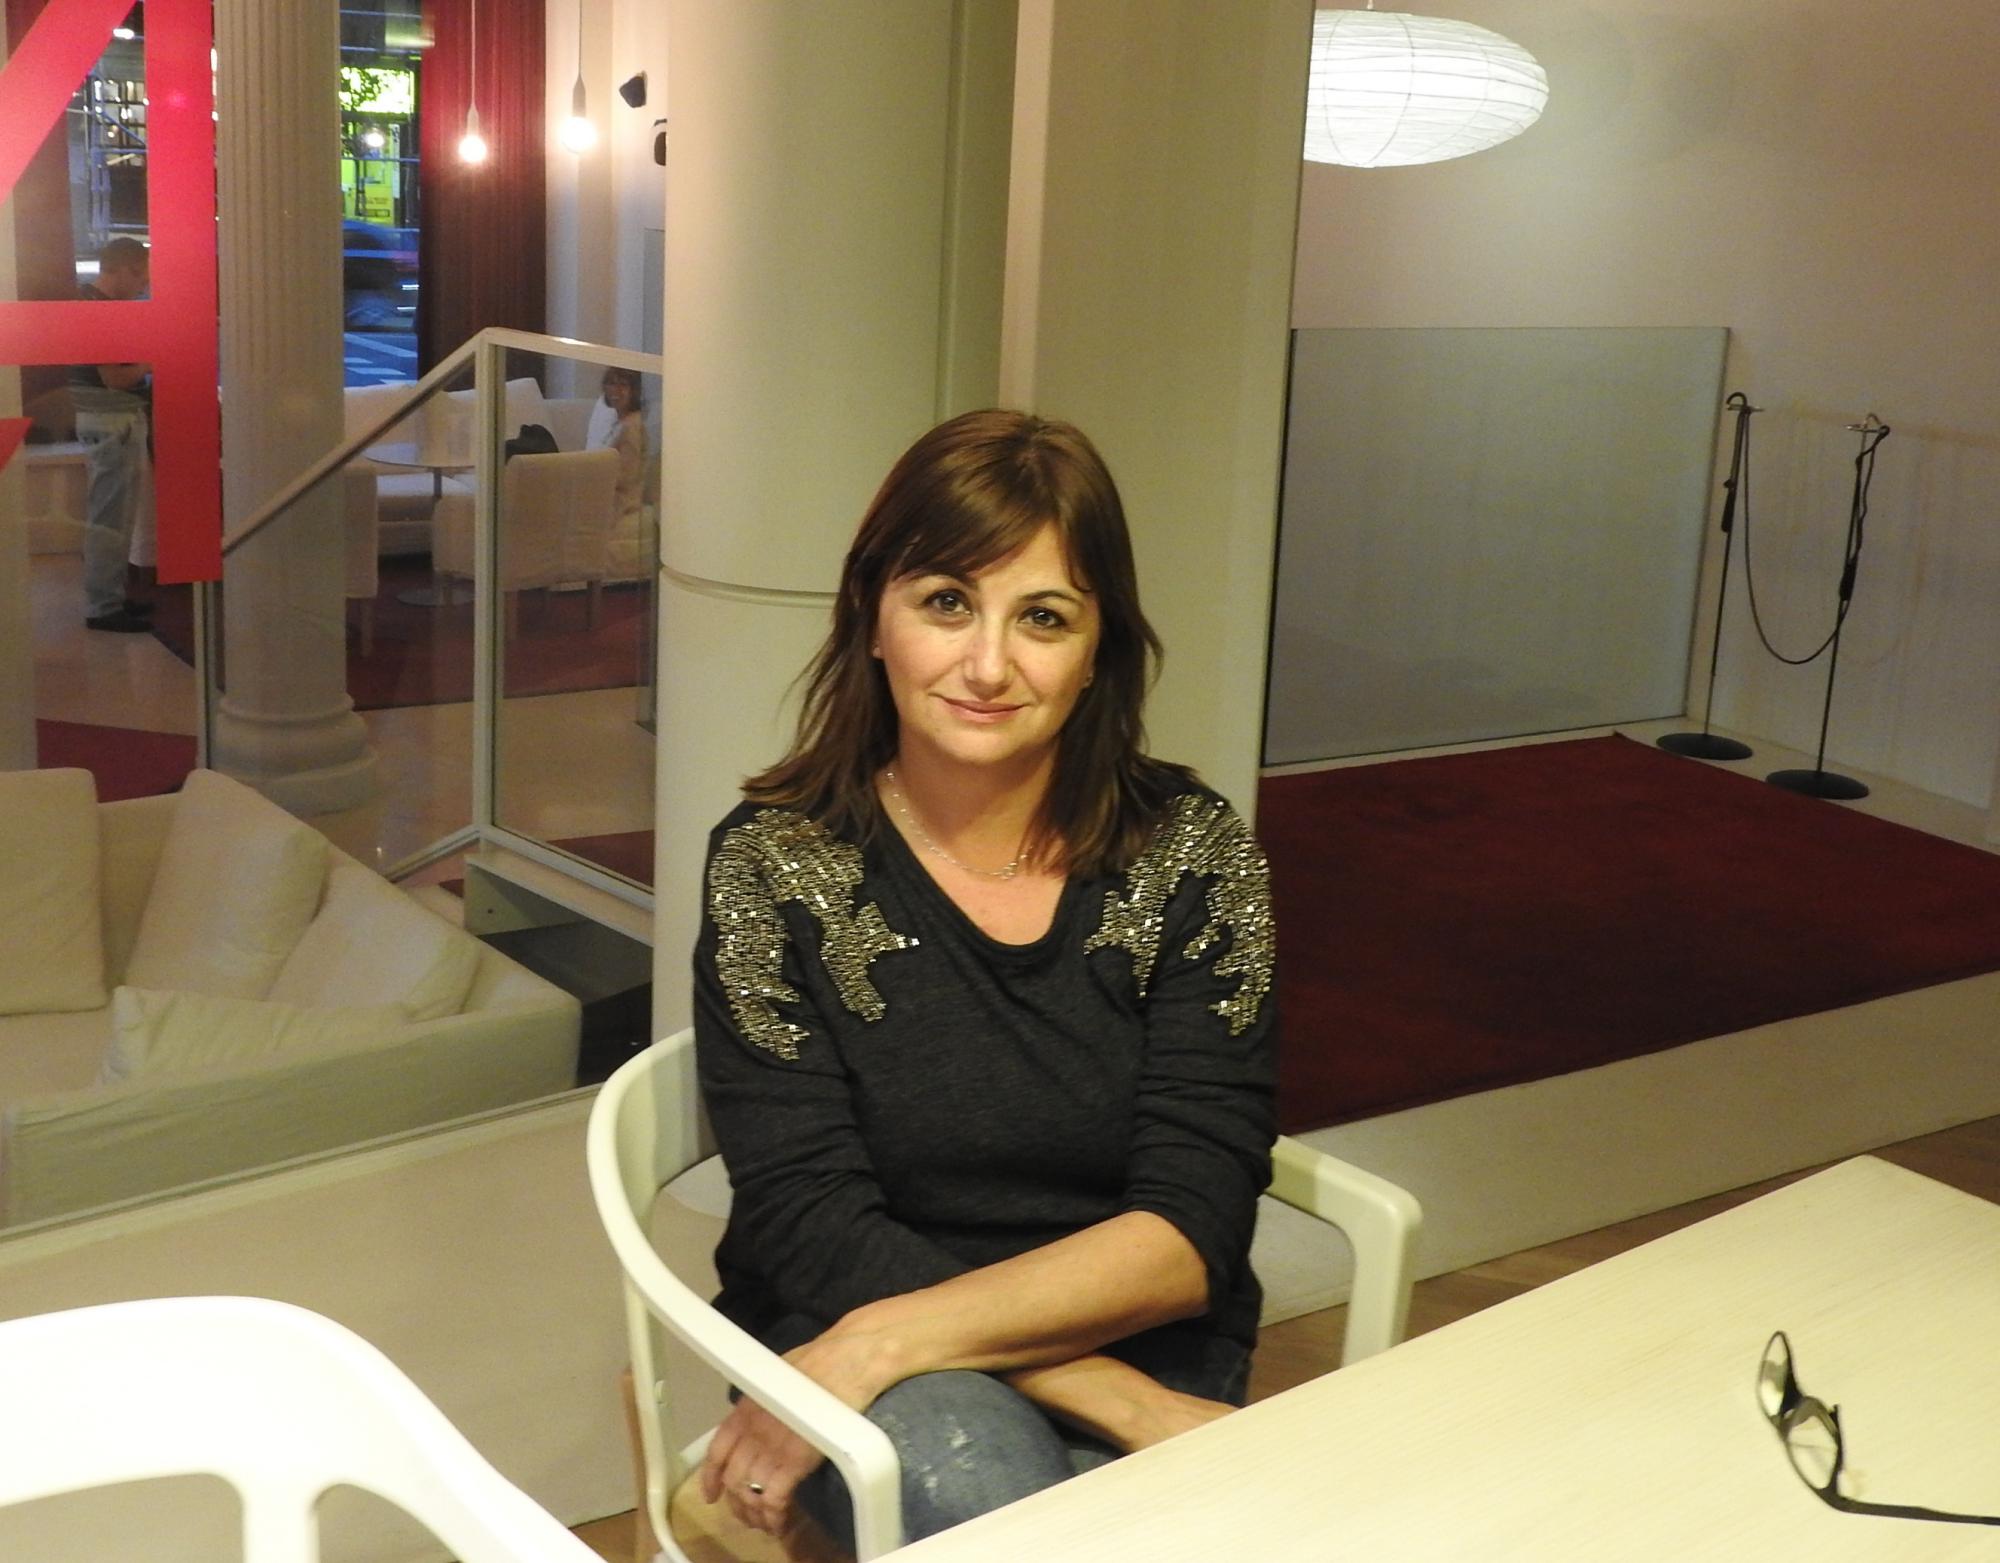 La escritora Carmen Amoraga presenta su nueva novela “Basta con vivir”, tras tres años de espera